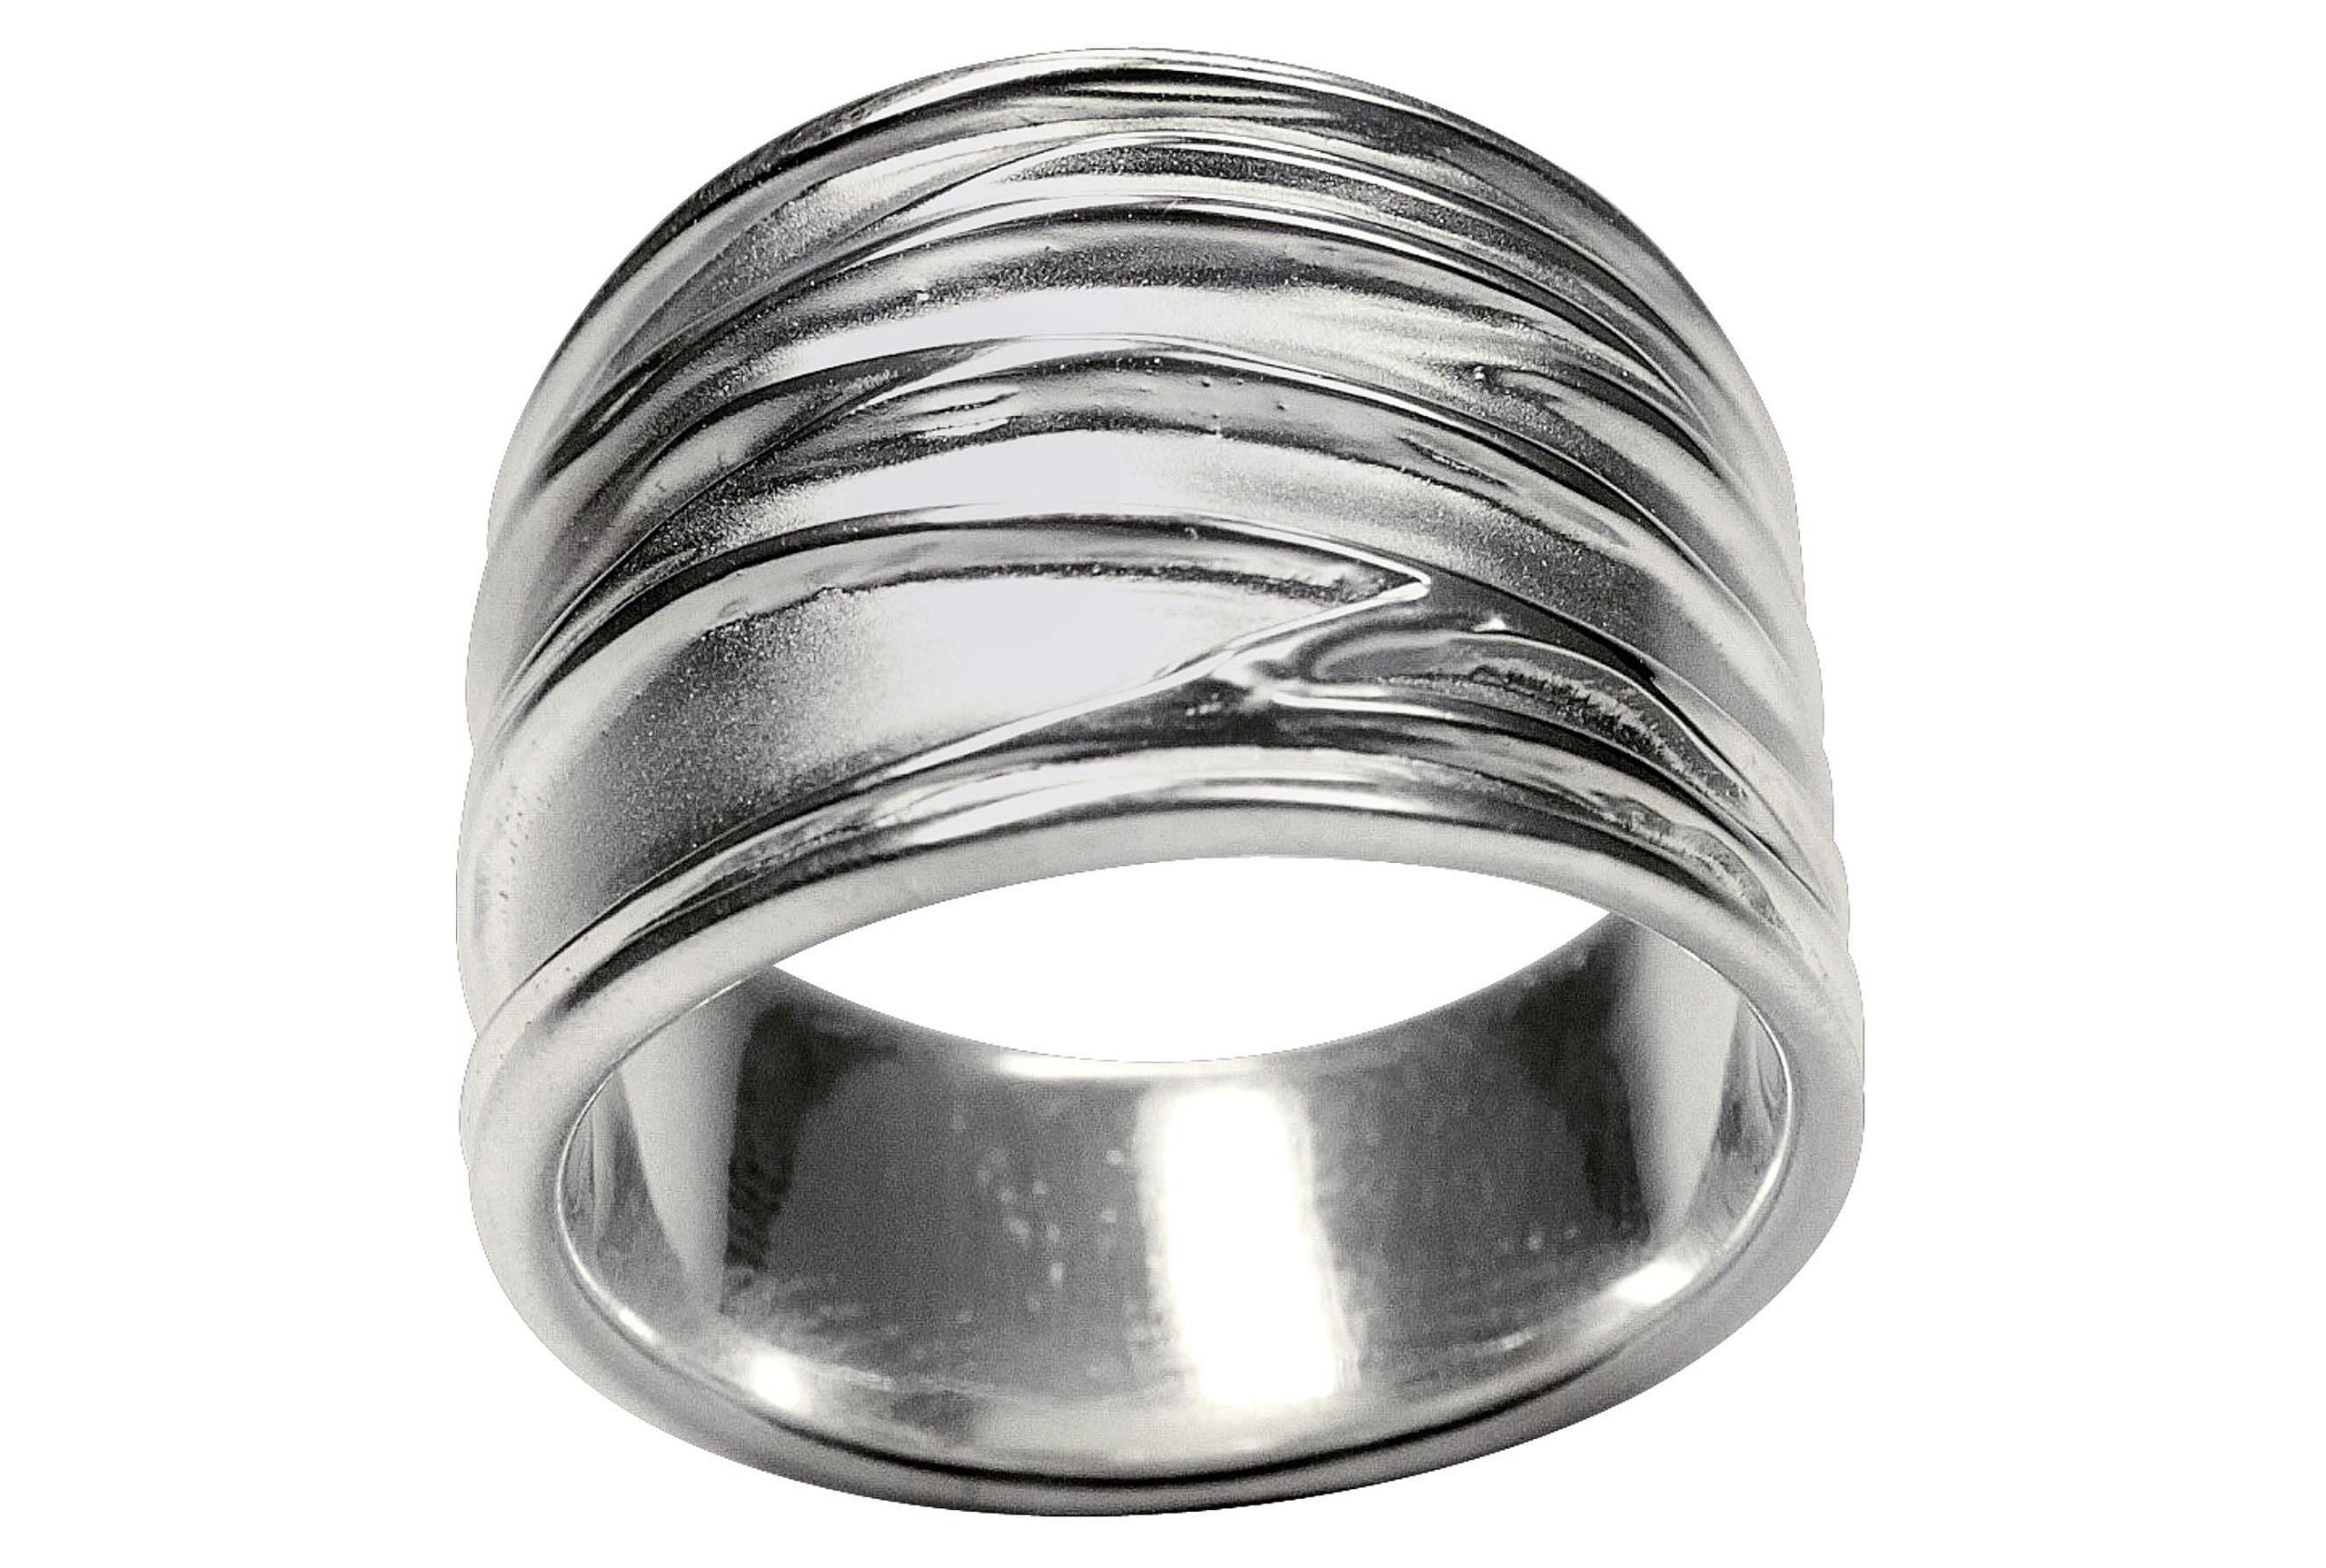 Ein Silberring für Damen mit einer gefalteten Wellenstruktur als Oberfläche, wobei sich die Ringschiene nach unten hin verjüngt.